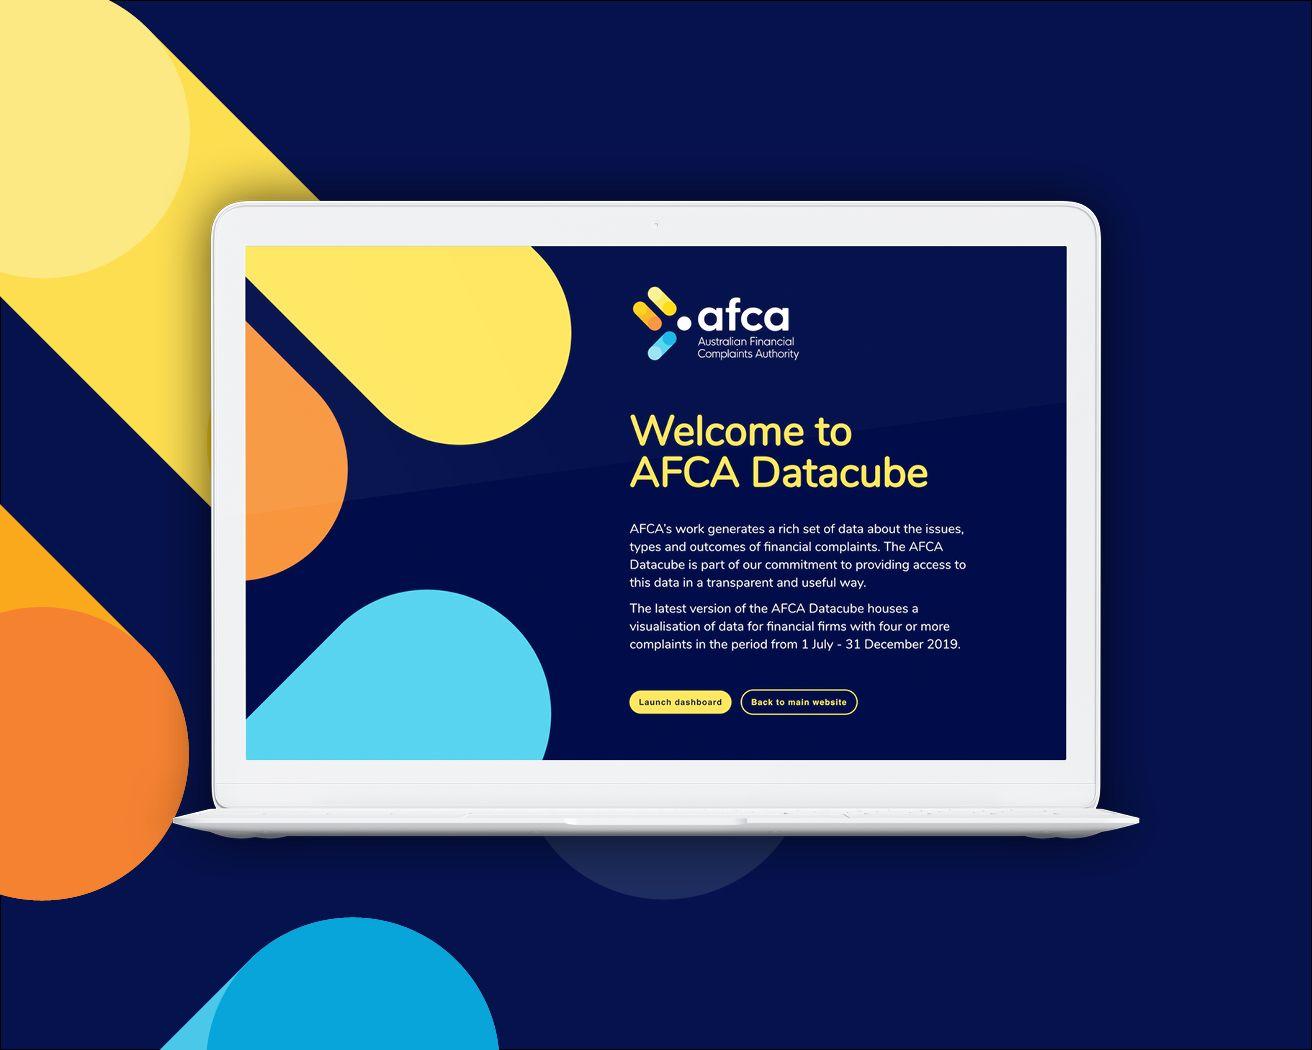 AFCA Datacube